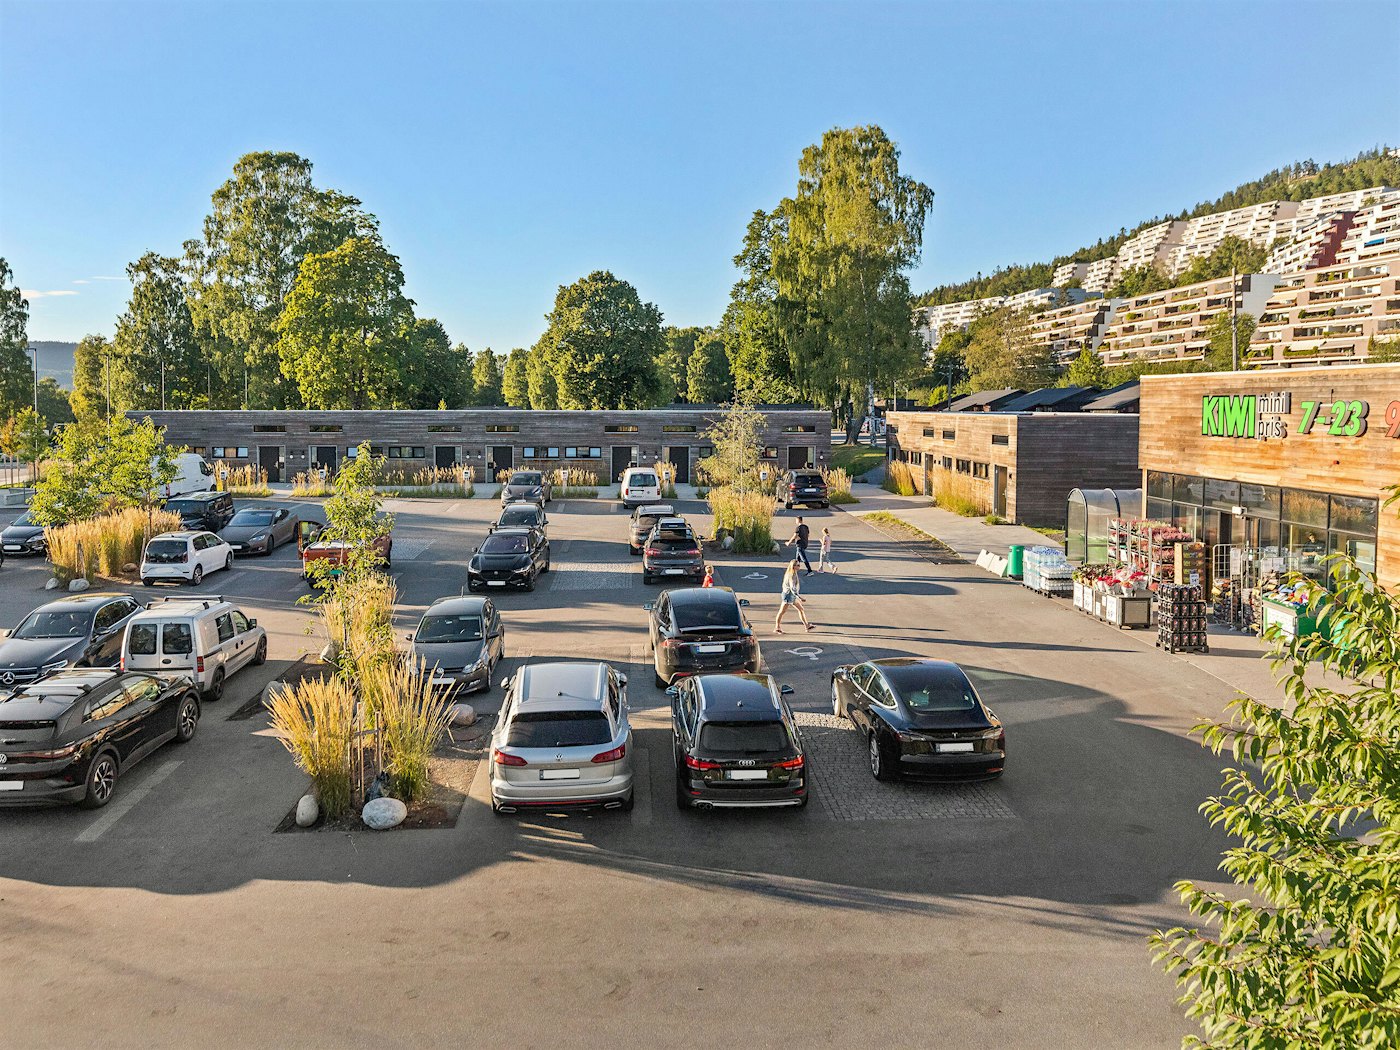 Parkeringsplass med flere biler, leilighetsbygg i tre i bakgrunnen. Kiwi-butikk på høyre side. Det er trær på parkeringsplassen og i bakgrunnen.o